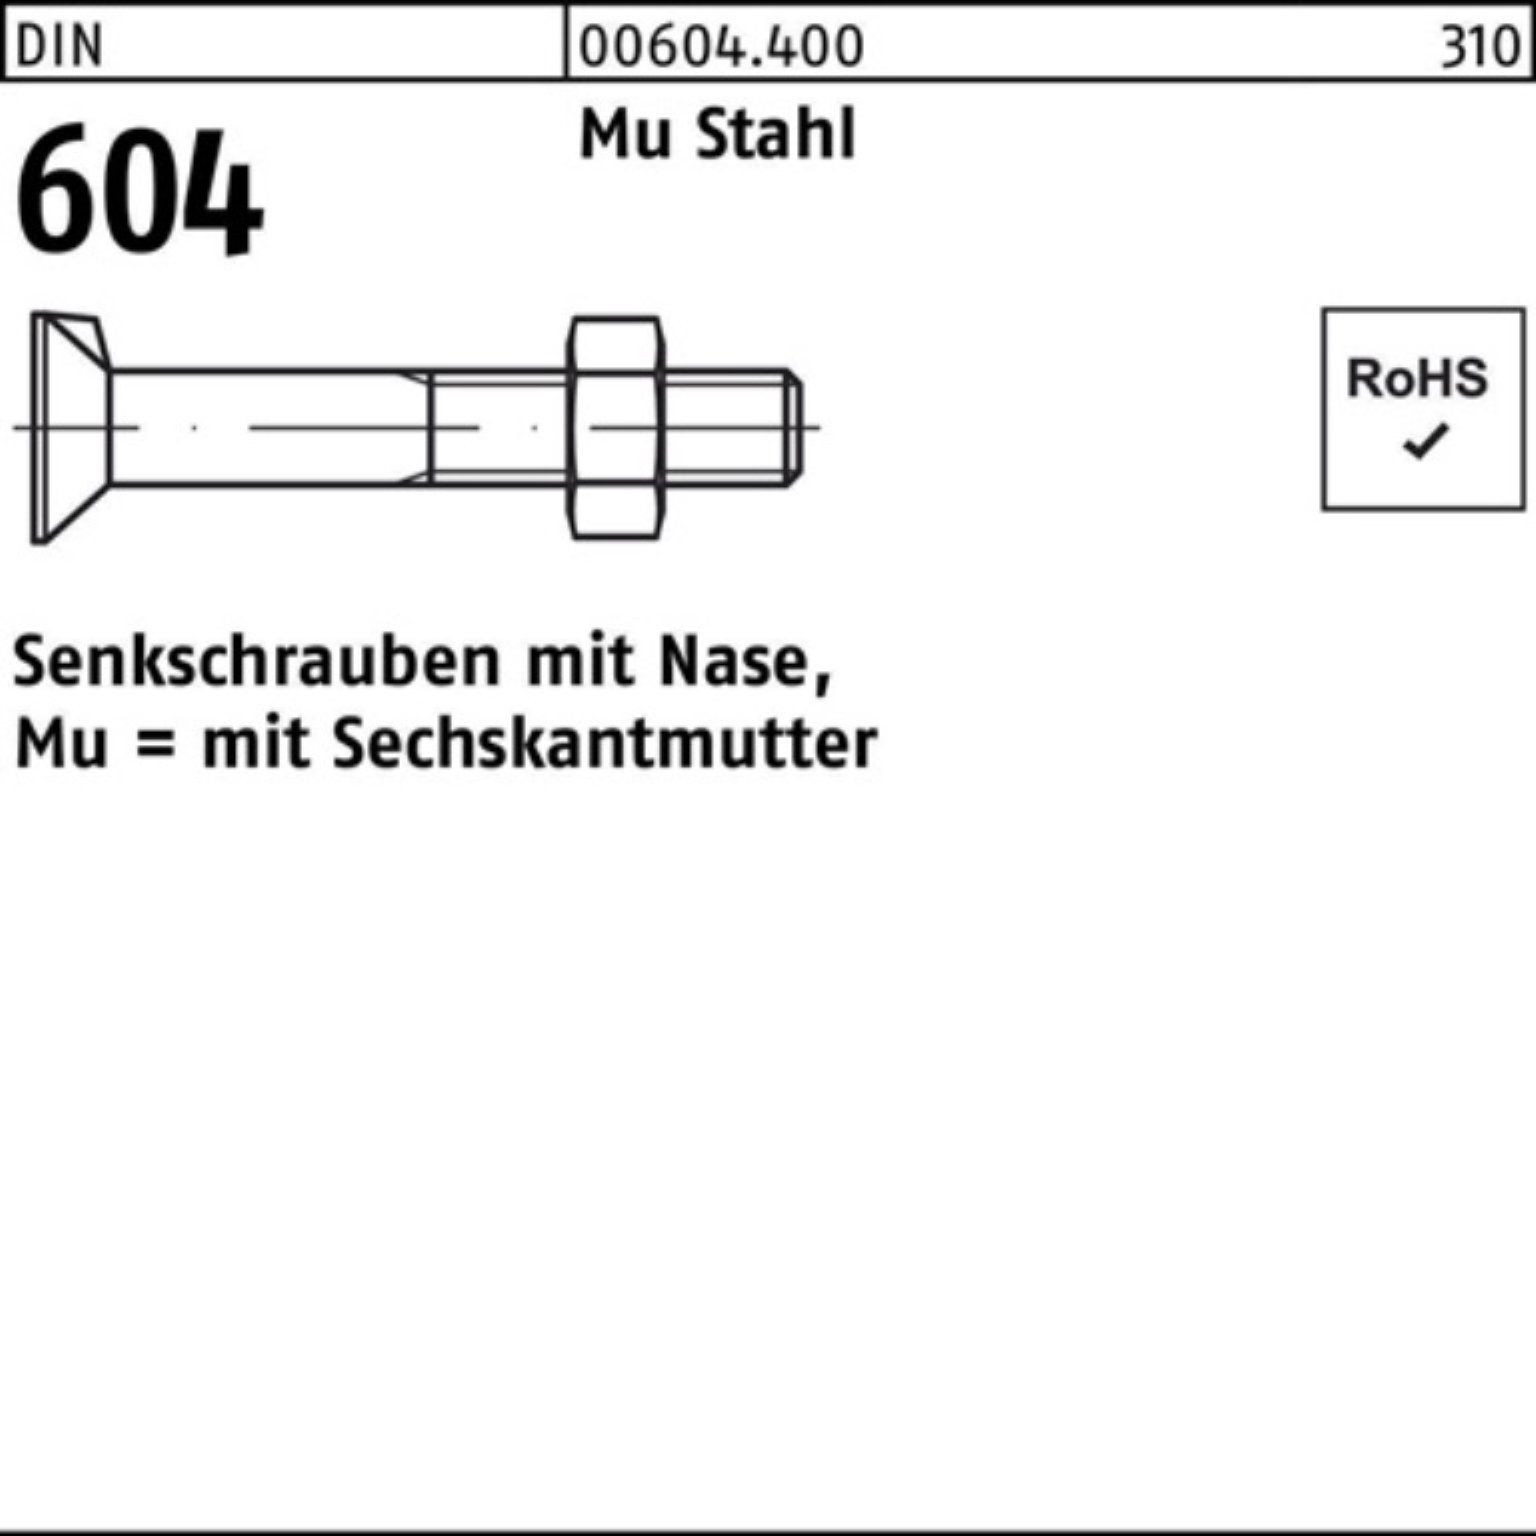 Reyher Senkschraube 100er Pack Senkschraube DIN 604 Nase/6-ktmutter M24x 60 Mu Stahl 4.6 2